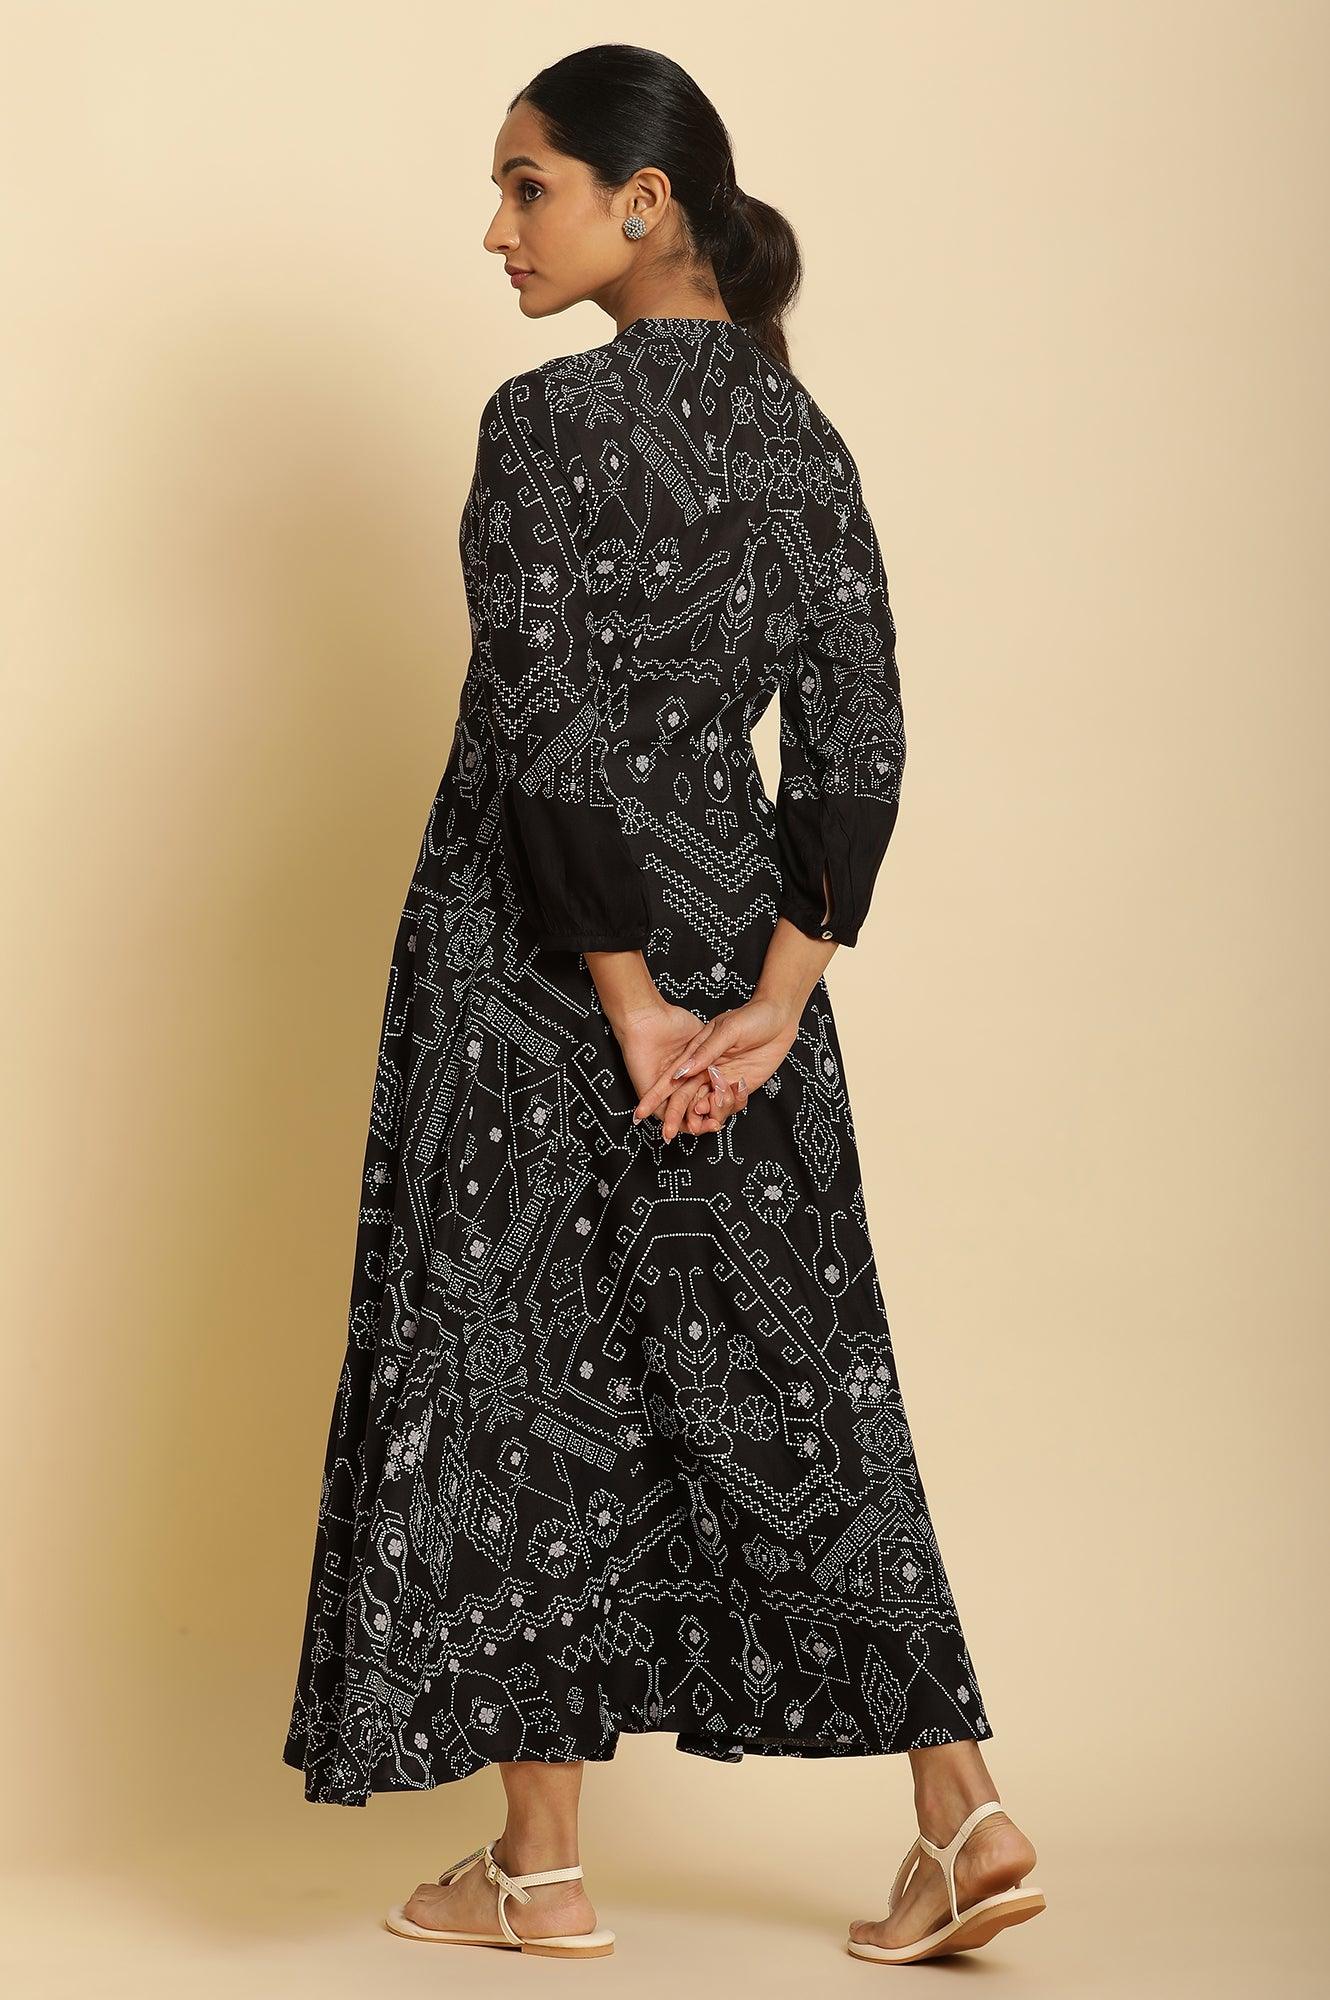 Black Bandhani Printed Flared Dress - wforwoman